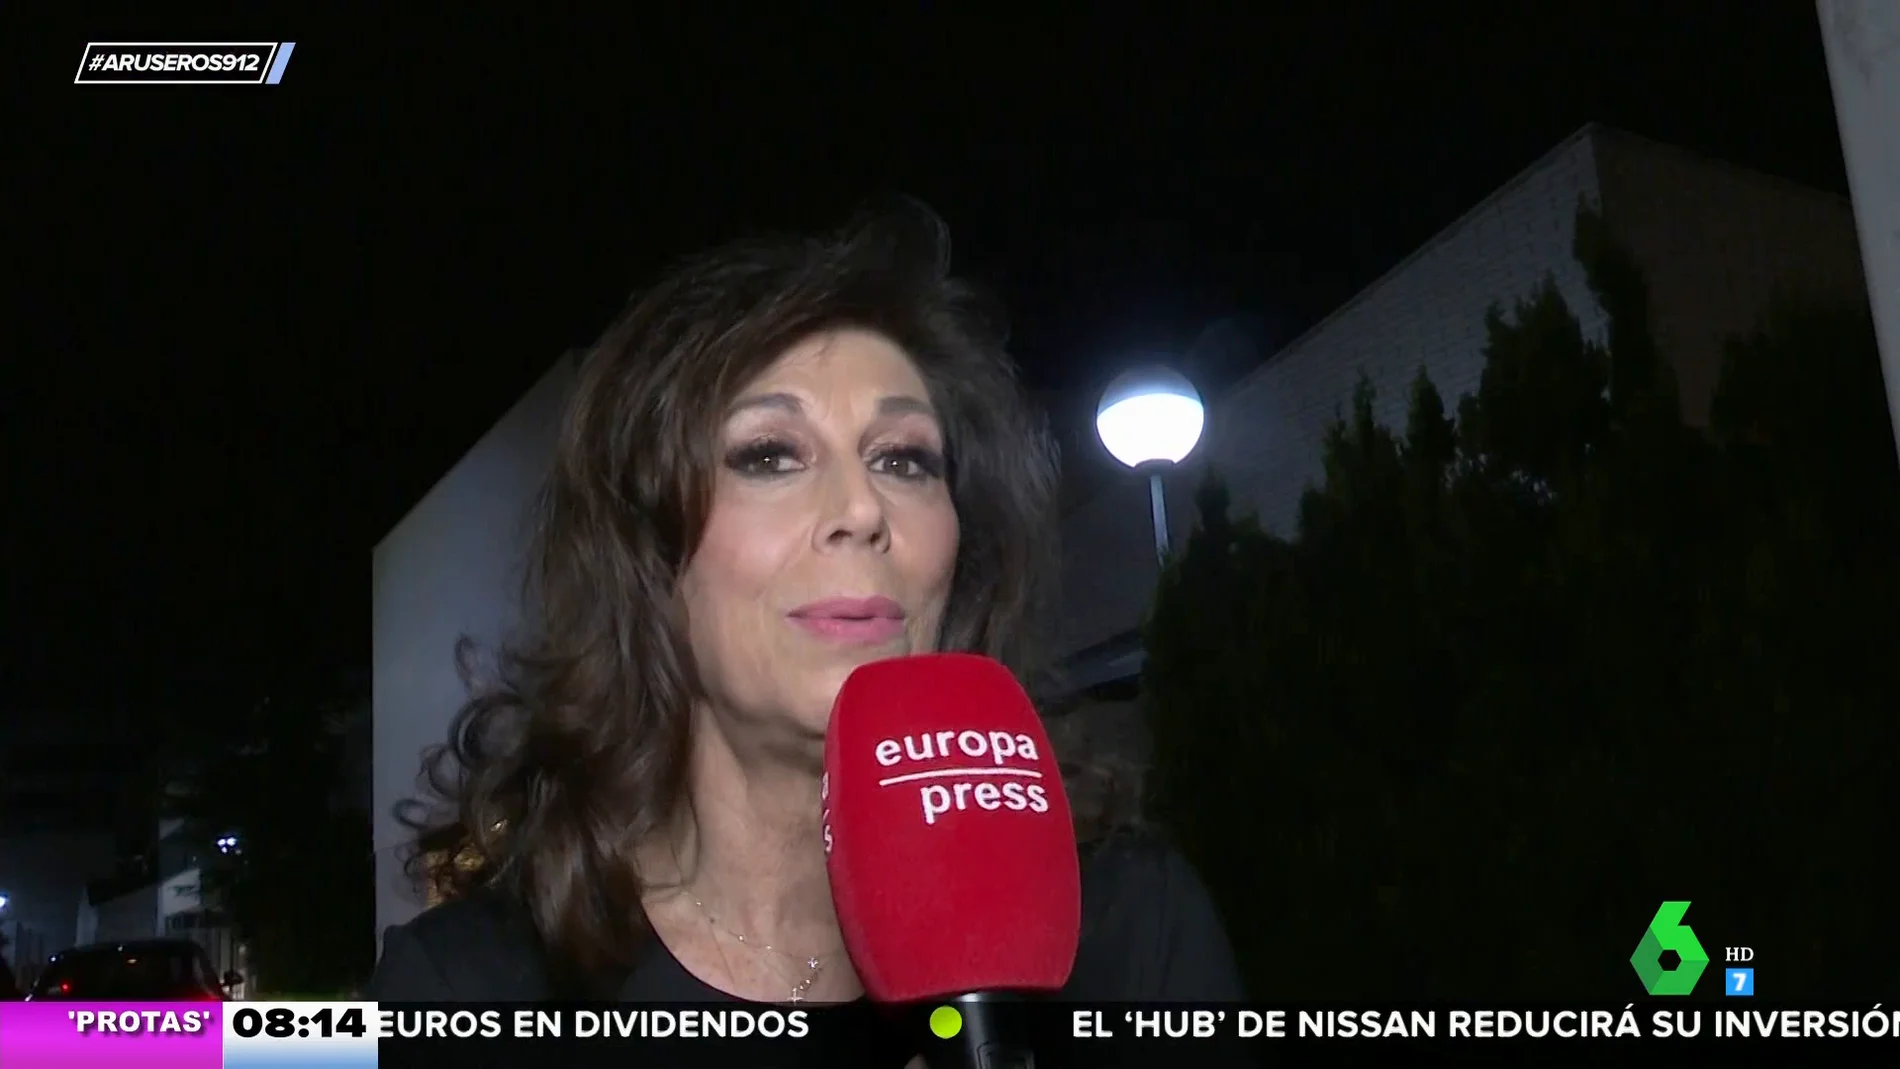 Isabel Luna, tras su famoso vídeo bailando con Ortega Cano: "Ni hay romance ni me pone ojitos"